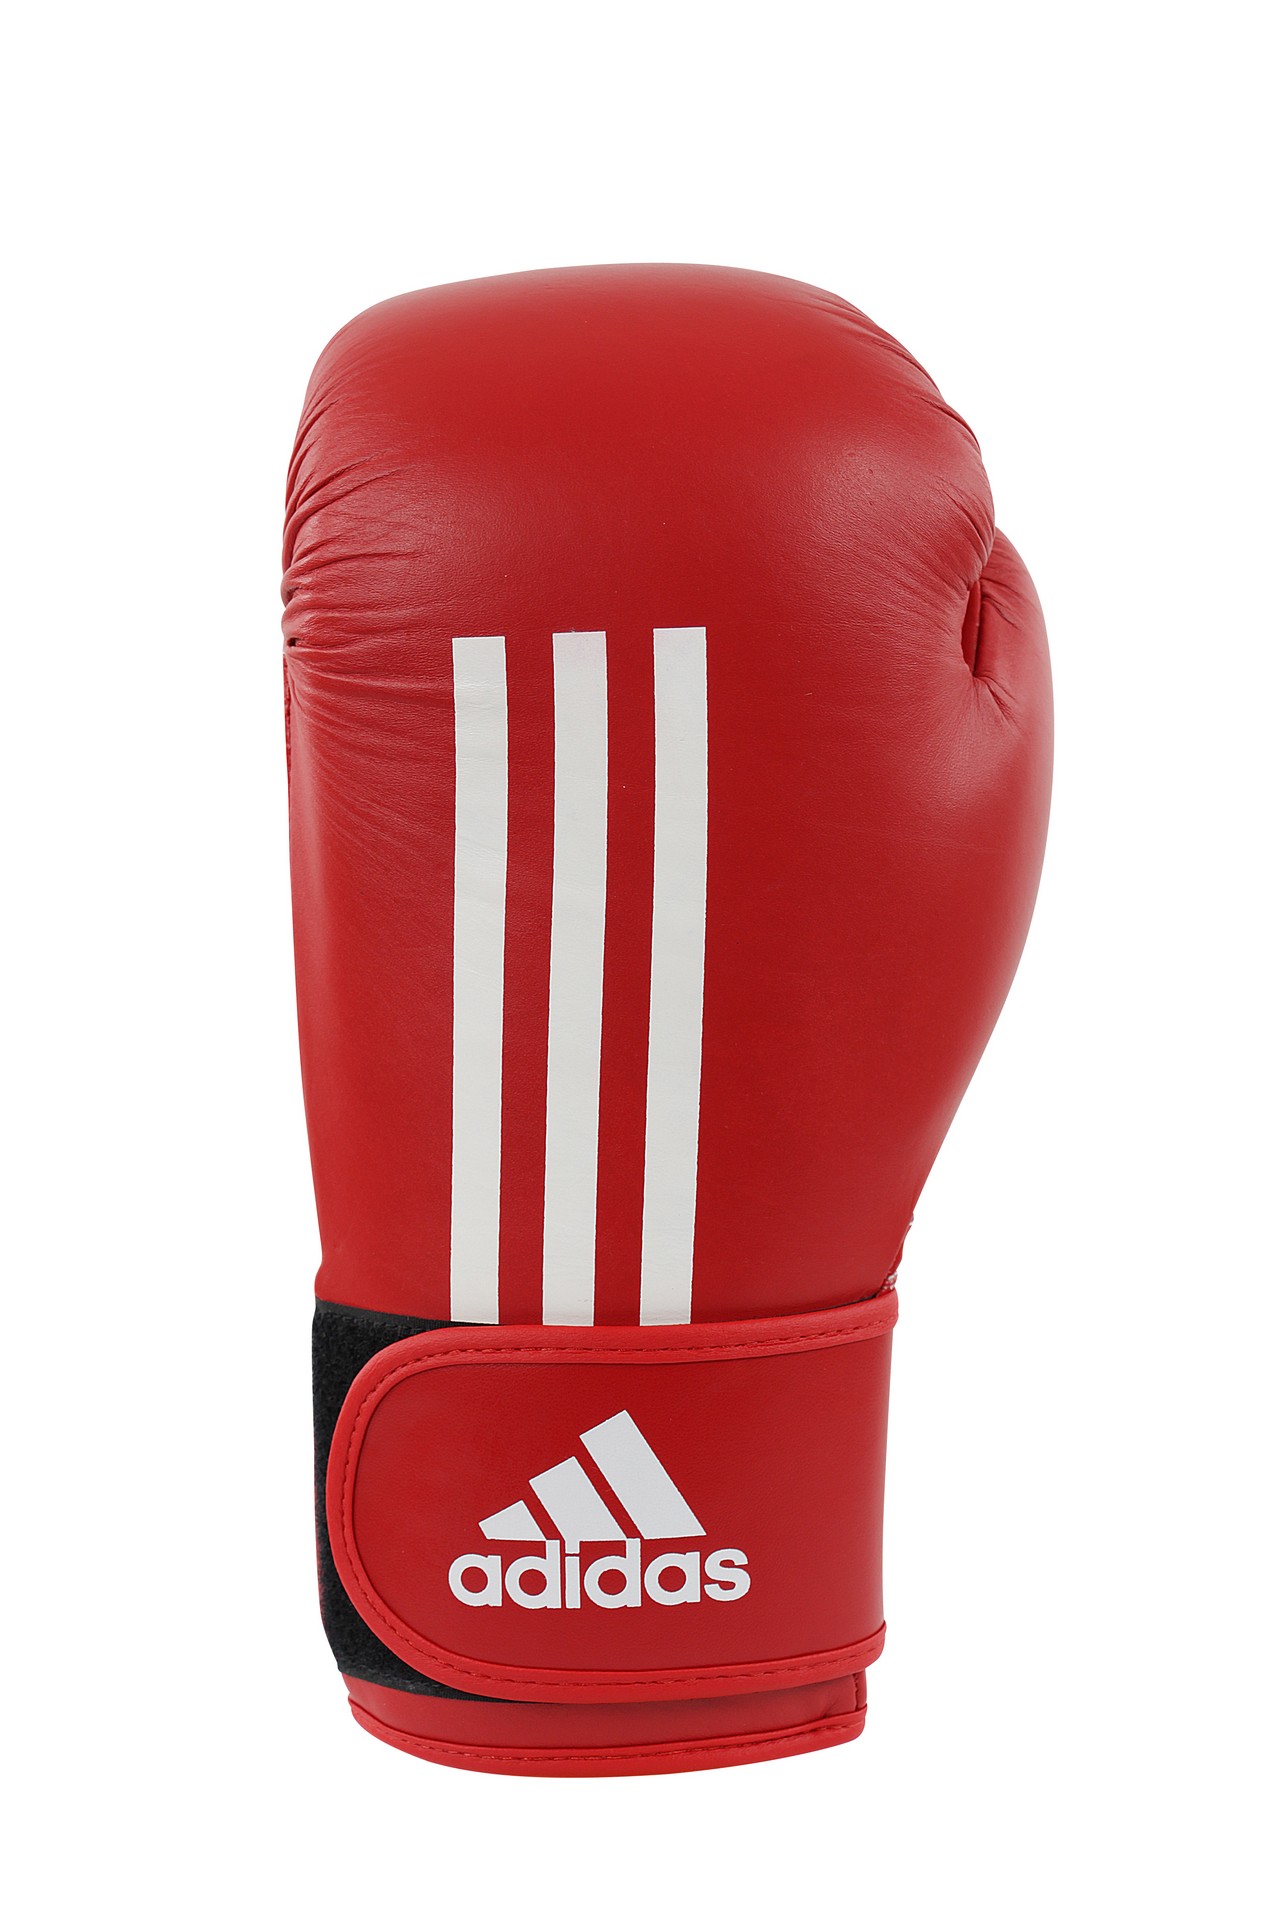 Адидас бокс. Перчатки бокс Energy ПУ 551. Adidas Boxing. Адидас боксерская экипировка флаг Ирландии.